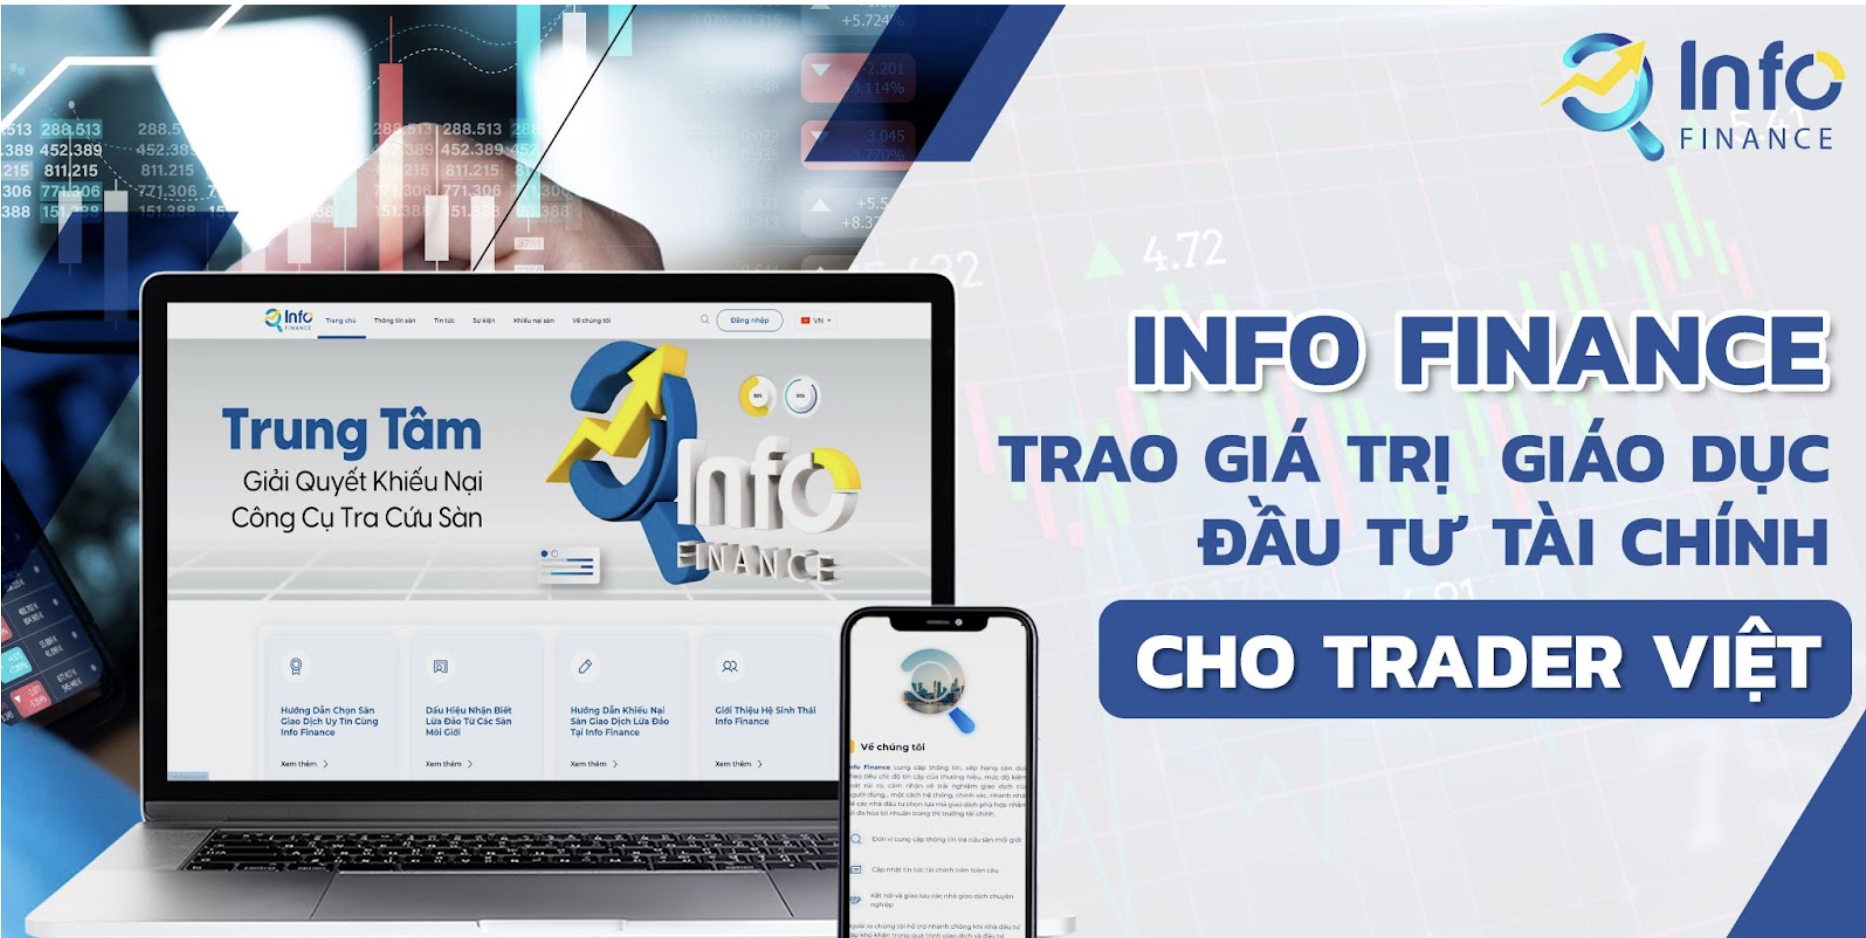 info-finance-trao-gia-tri-giao-duc-dau-tu-tai-chinh-cho-trader-viet